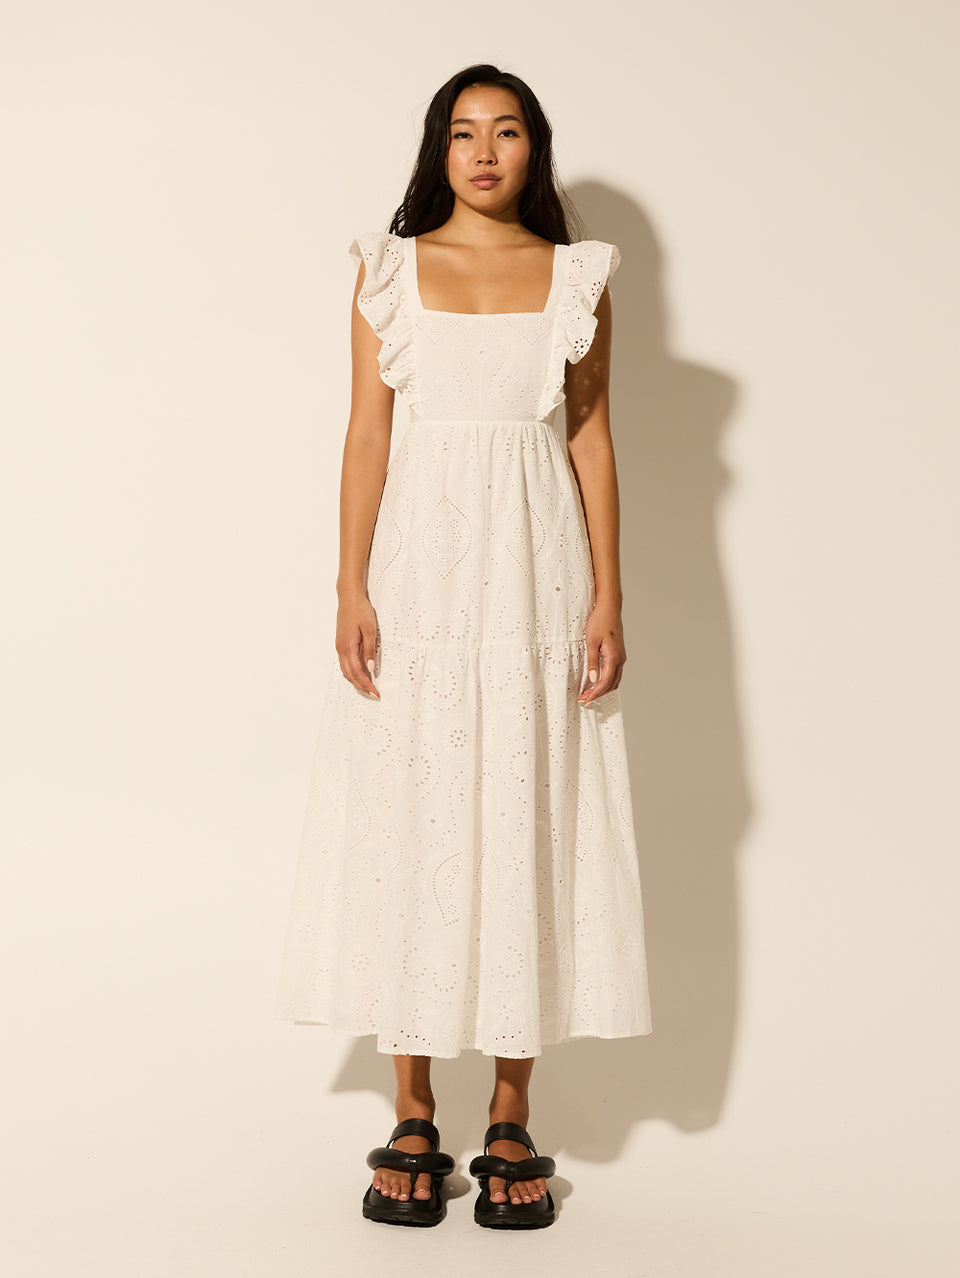 Clove Midi Dress KIVARI | Model wears white embroidered midi dress